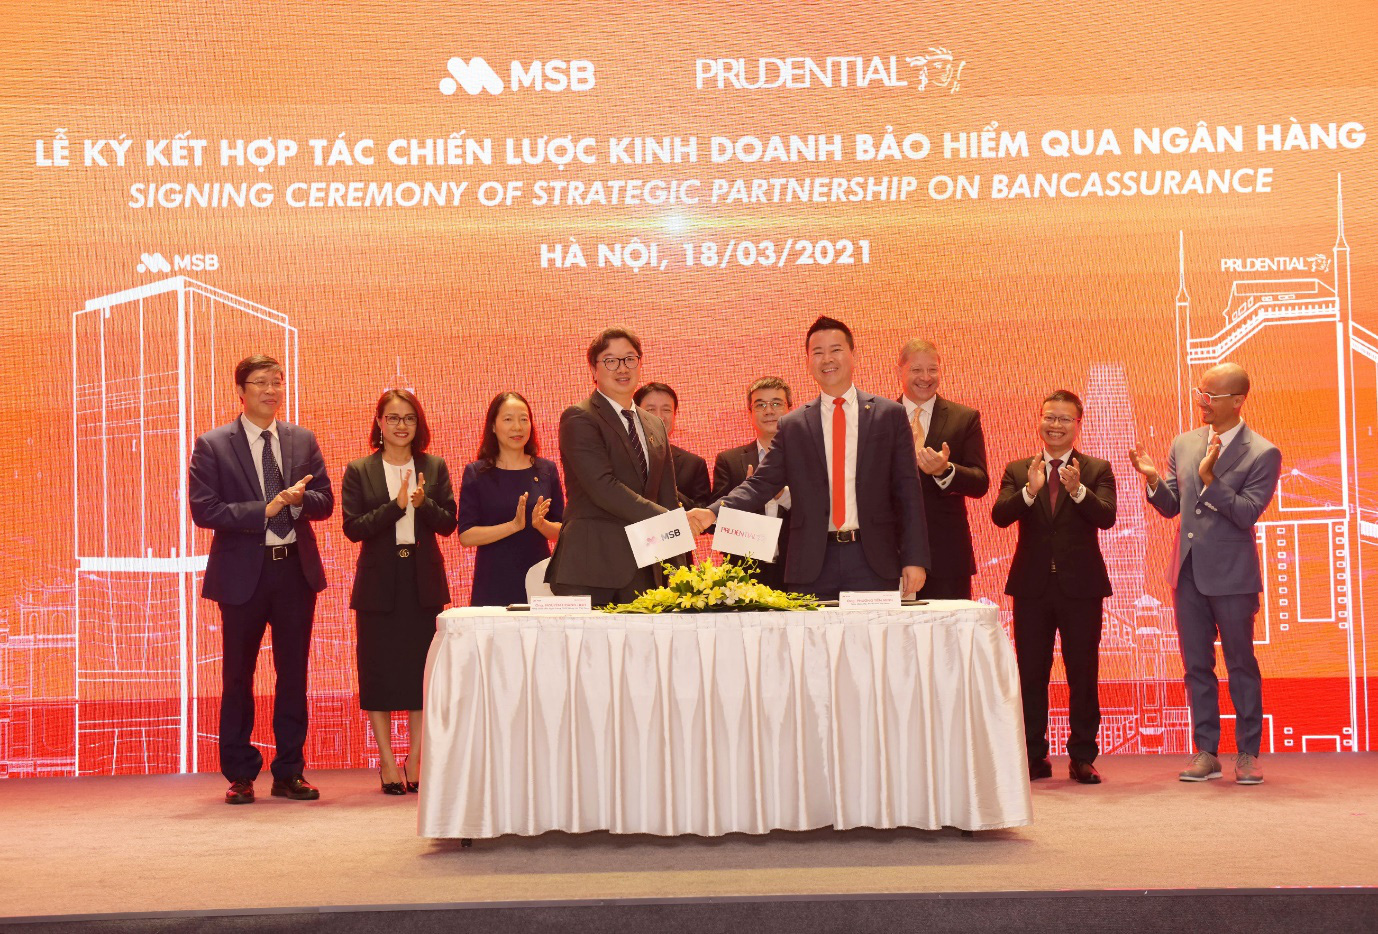 Prudential Việt Nam và Ngân hàng MSB chính thức ký kết gia hạn và mở rộng quan hệ hợp tác trong 15 năm - Ảnh 2.